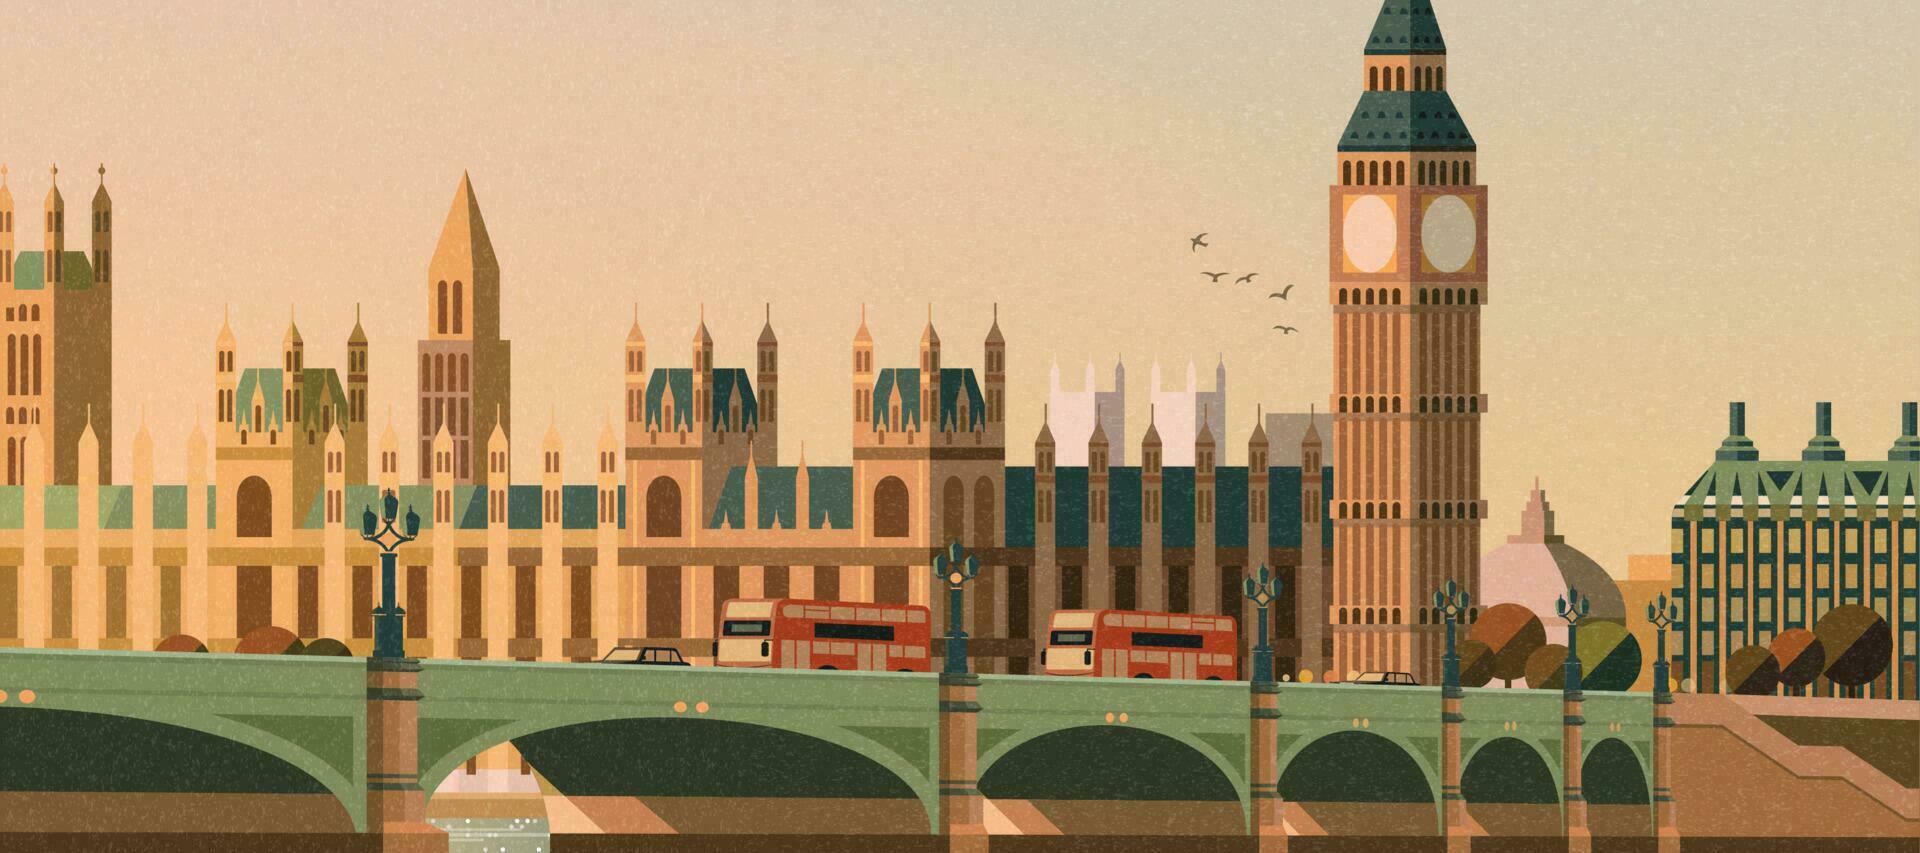 Big ben and westminster bridge scene in flat style vector